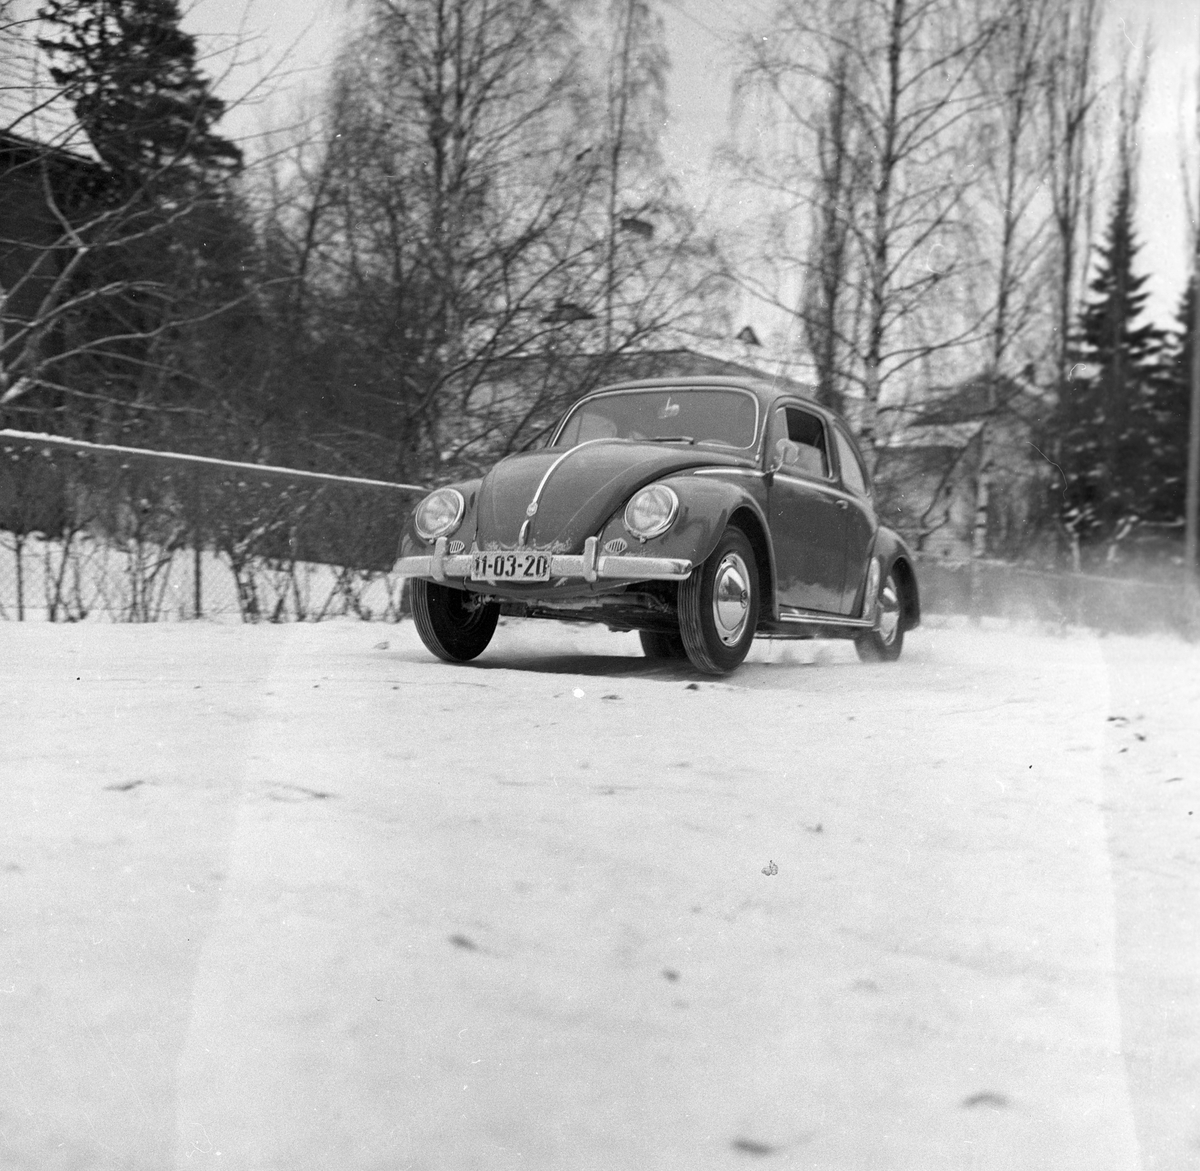 Testing av Volkswagen regnr.11-03-20.
Fotografert 1958.